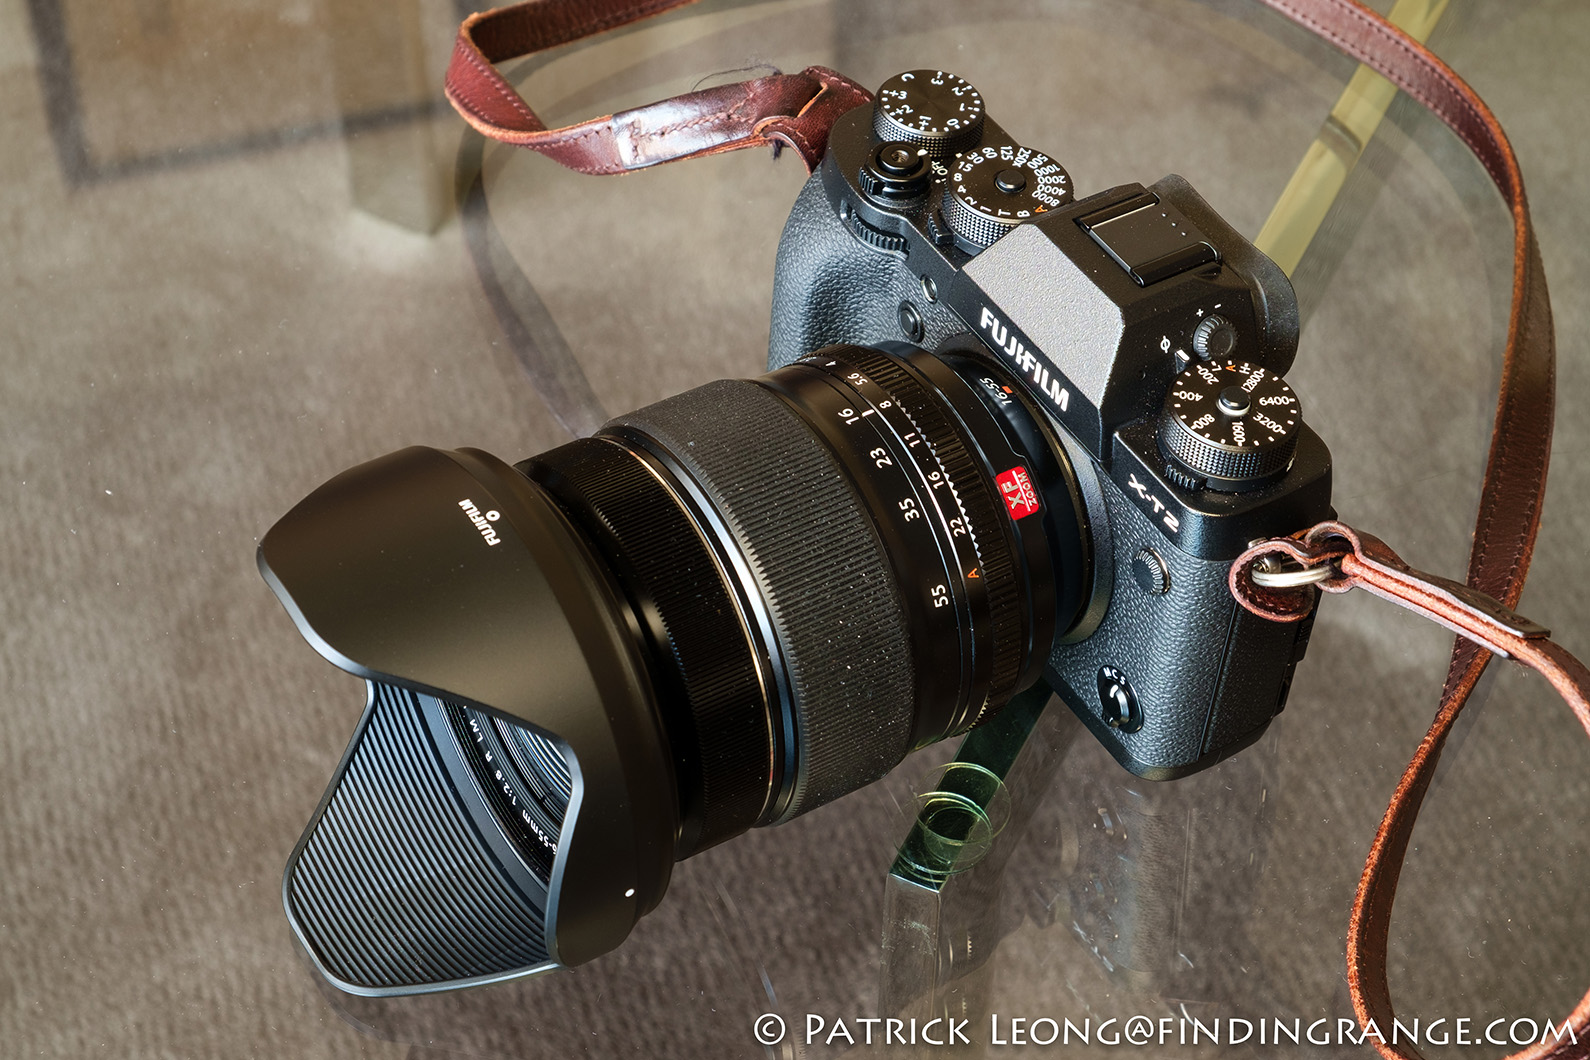 Fujifilm XF 16-55mm f2.8 R LM WR Lens Review